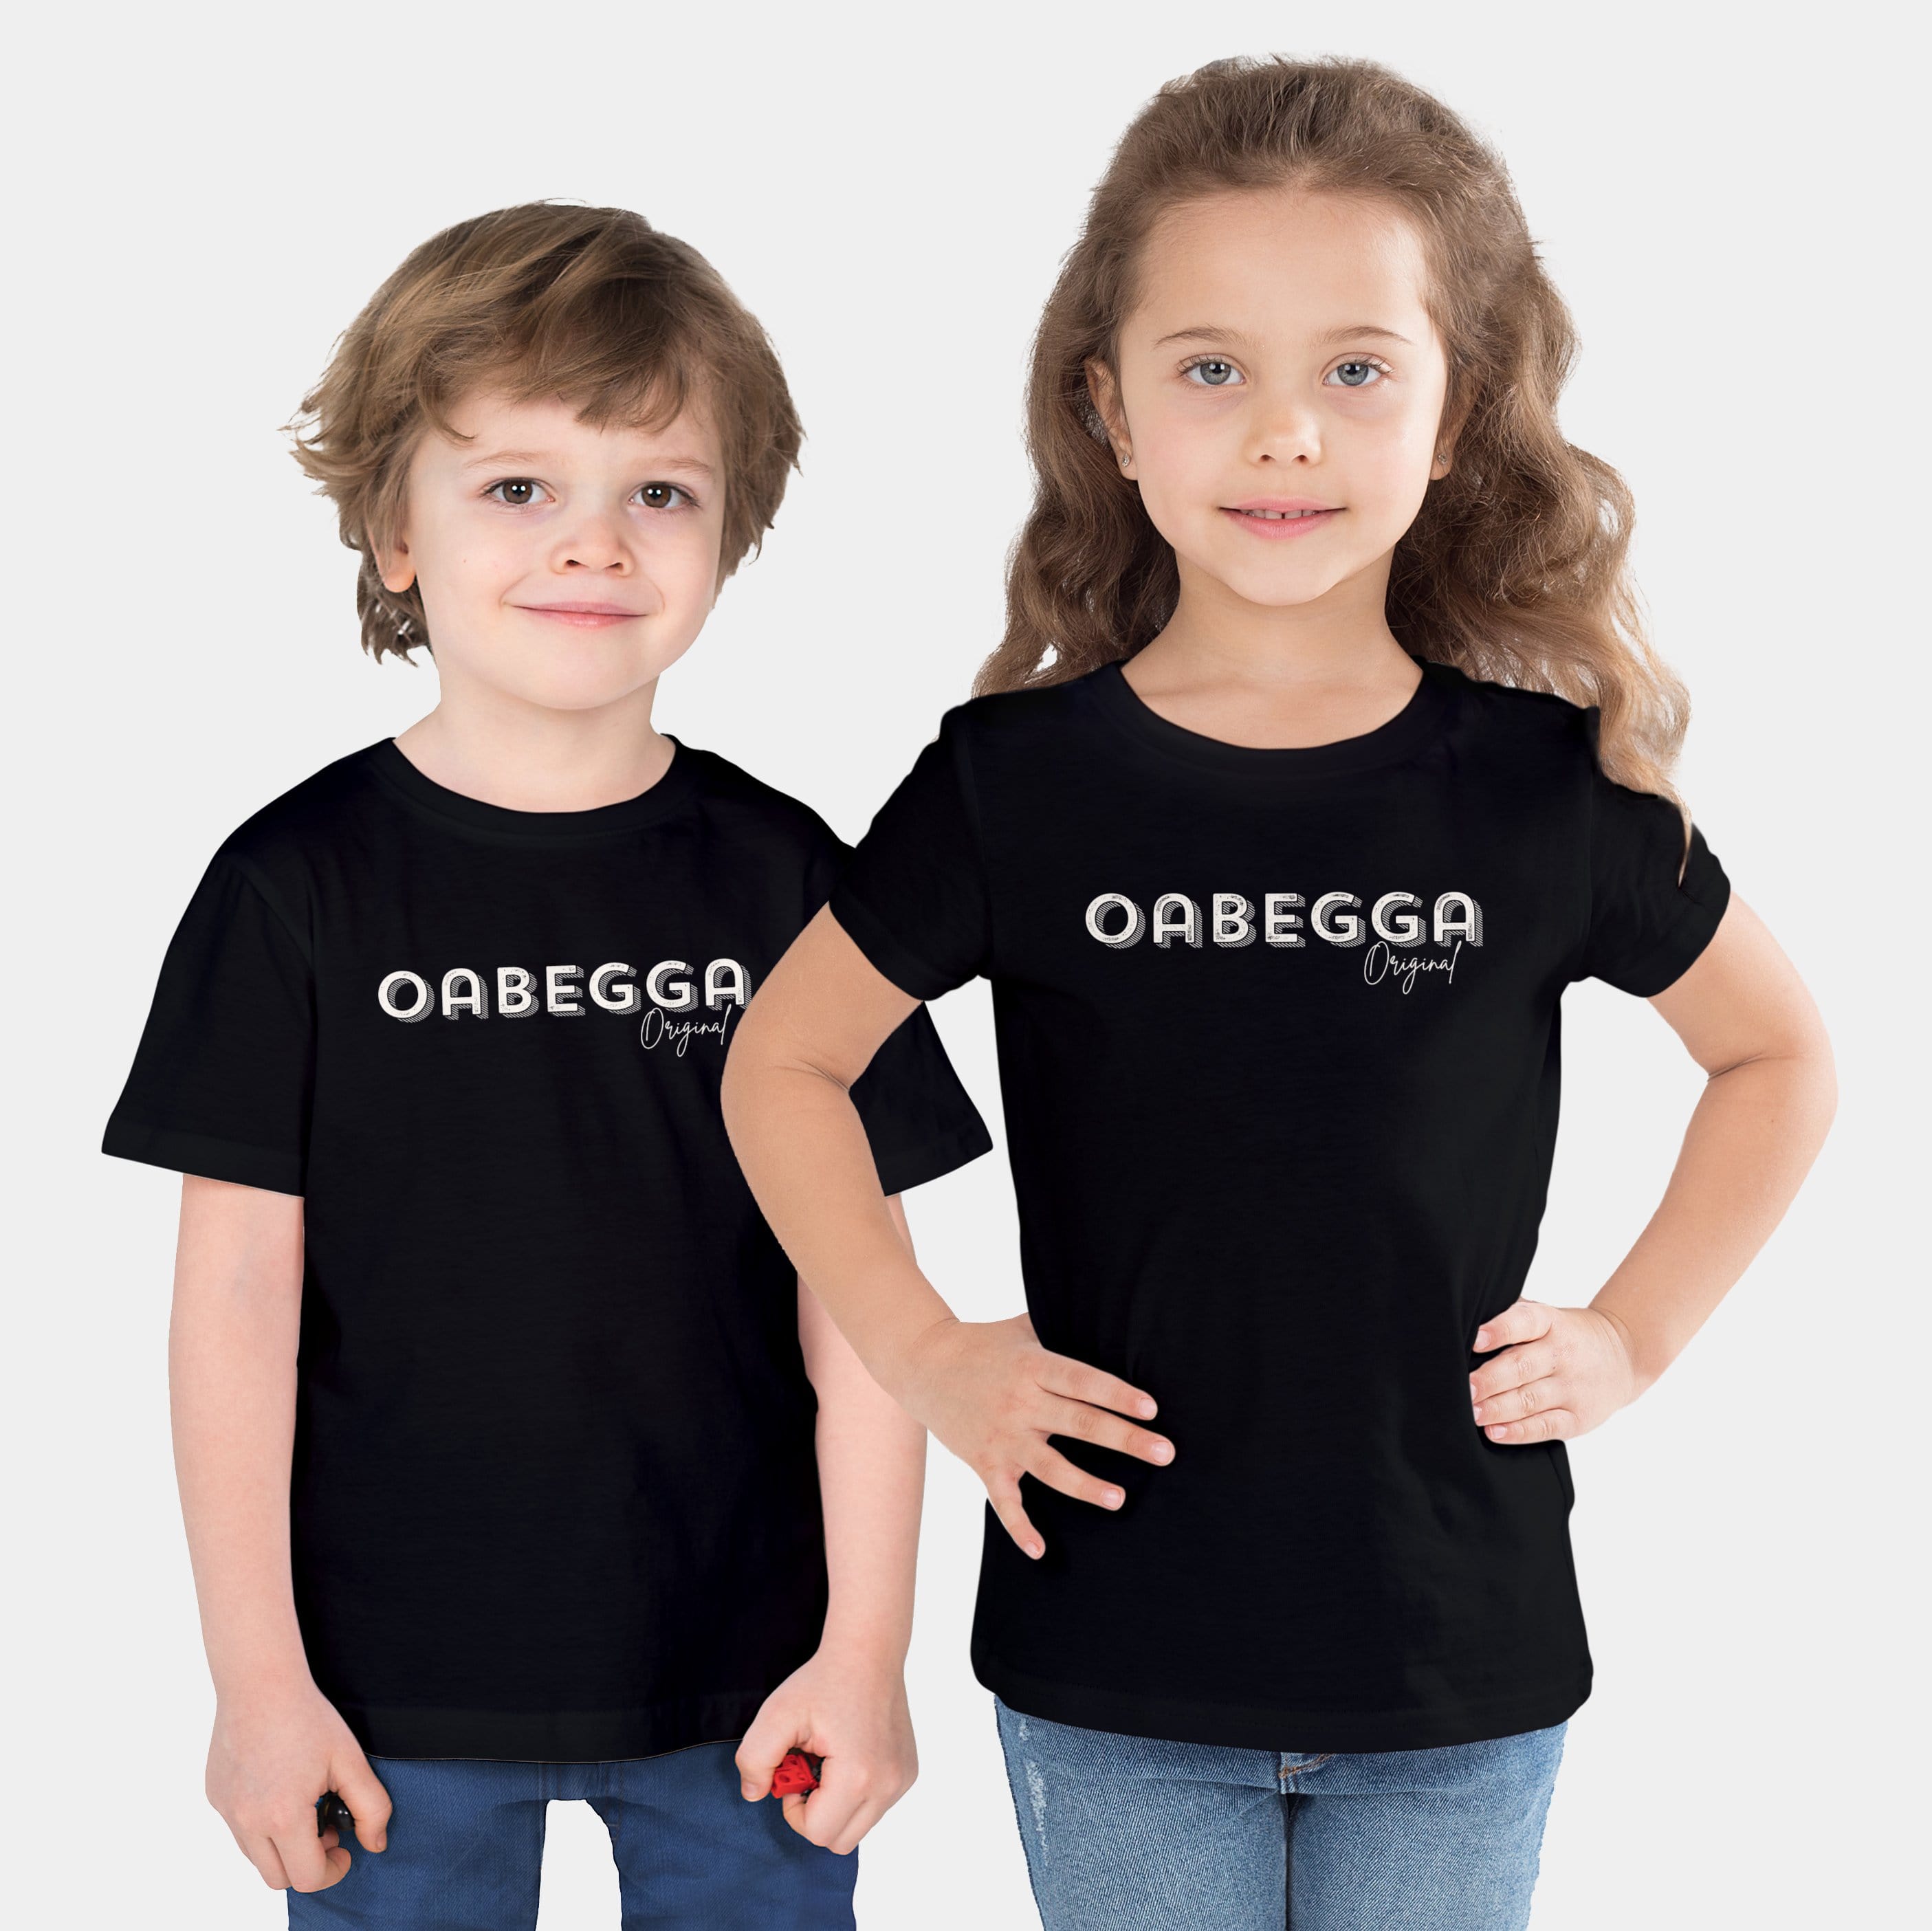 HEITER & LÄSSIG Kinder-T-Shirt "Oabegga Original" 92/98 / schwarz - aus nachhaltiger und fairer Produktion